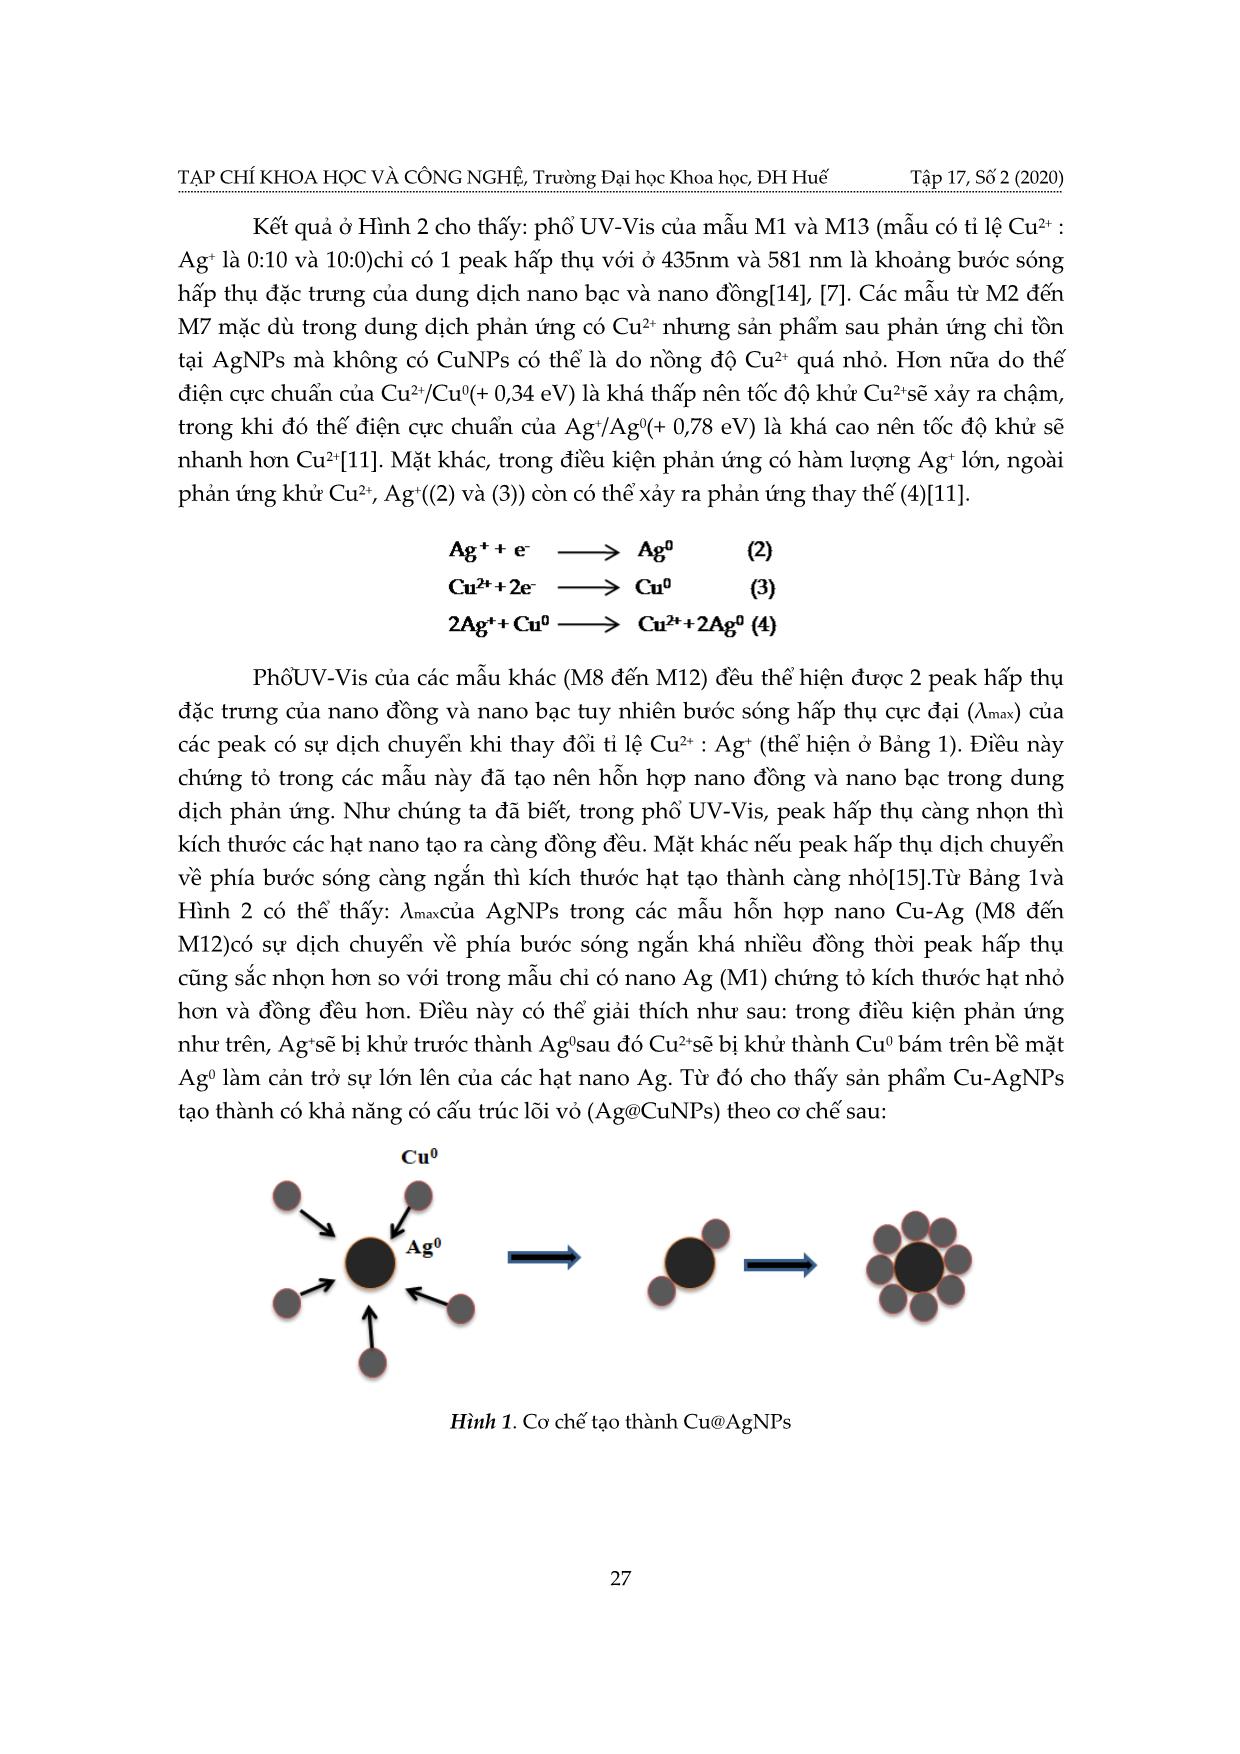 Nghiên cứu tổng hợp vật liệu hỗn hợp nano Cu - Ag trang 3